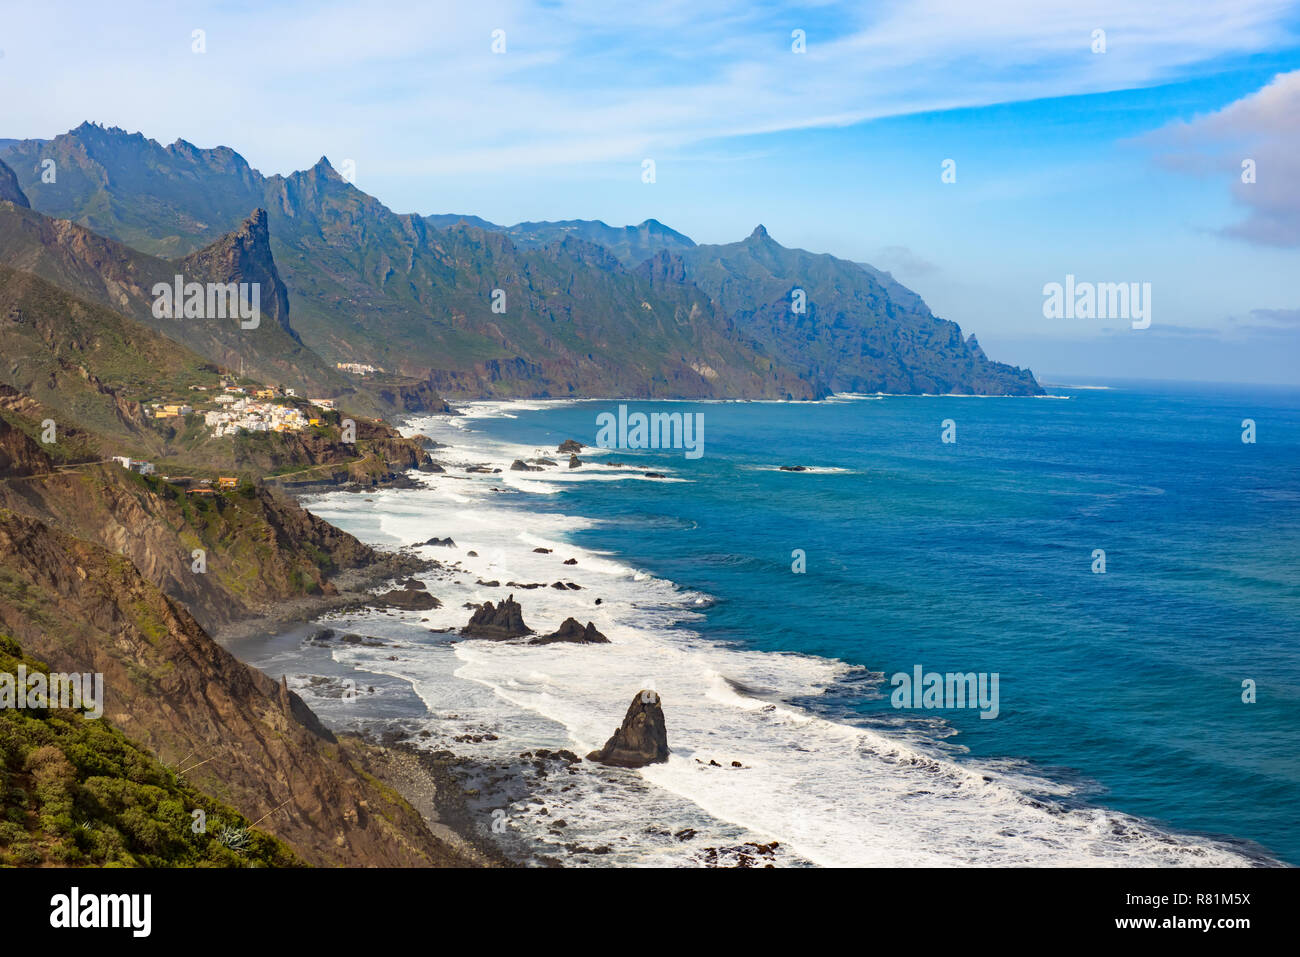 ocean shore near Almaciga, Anaga, Tenerife island Stock Photo